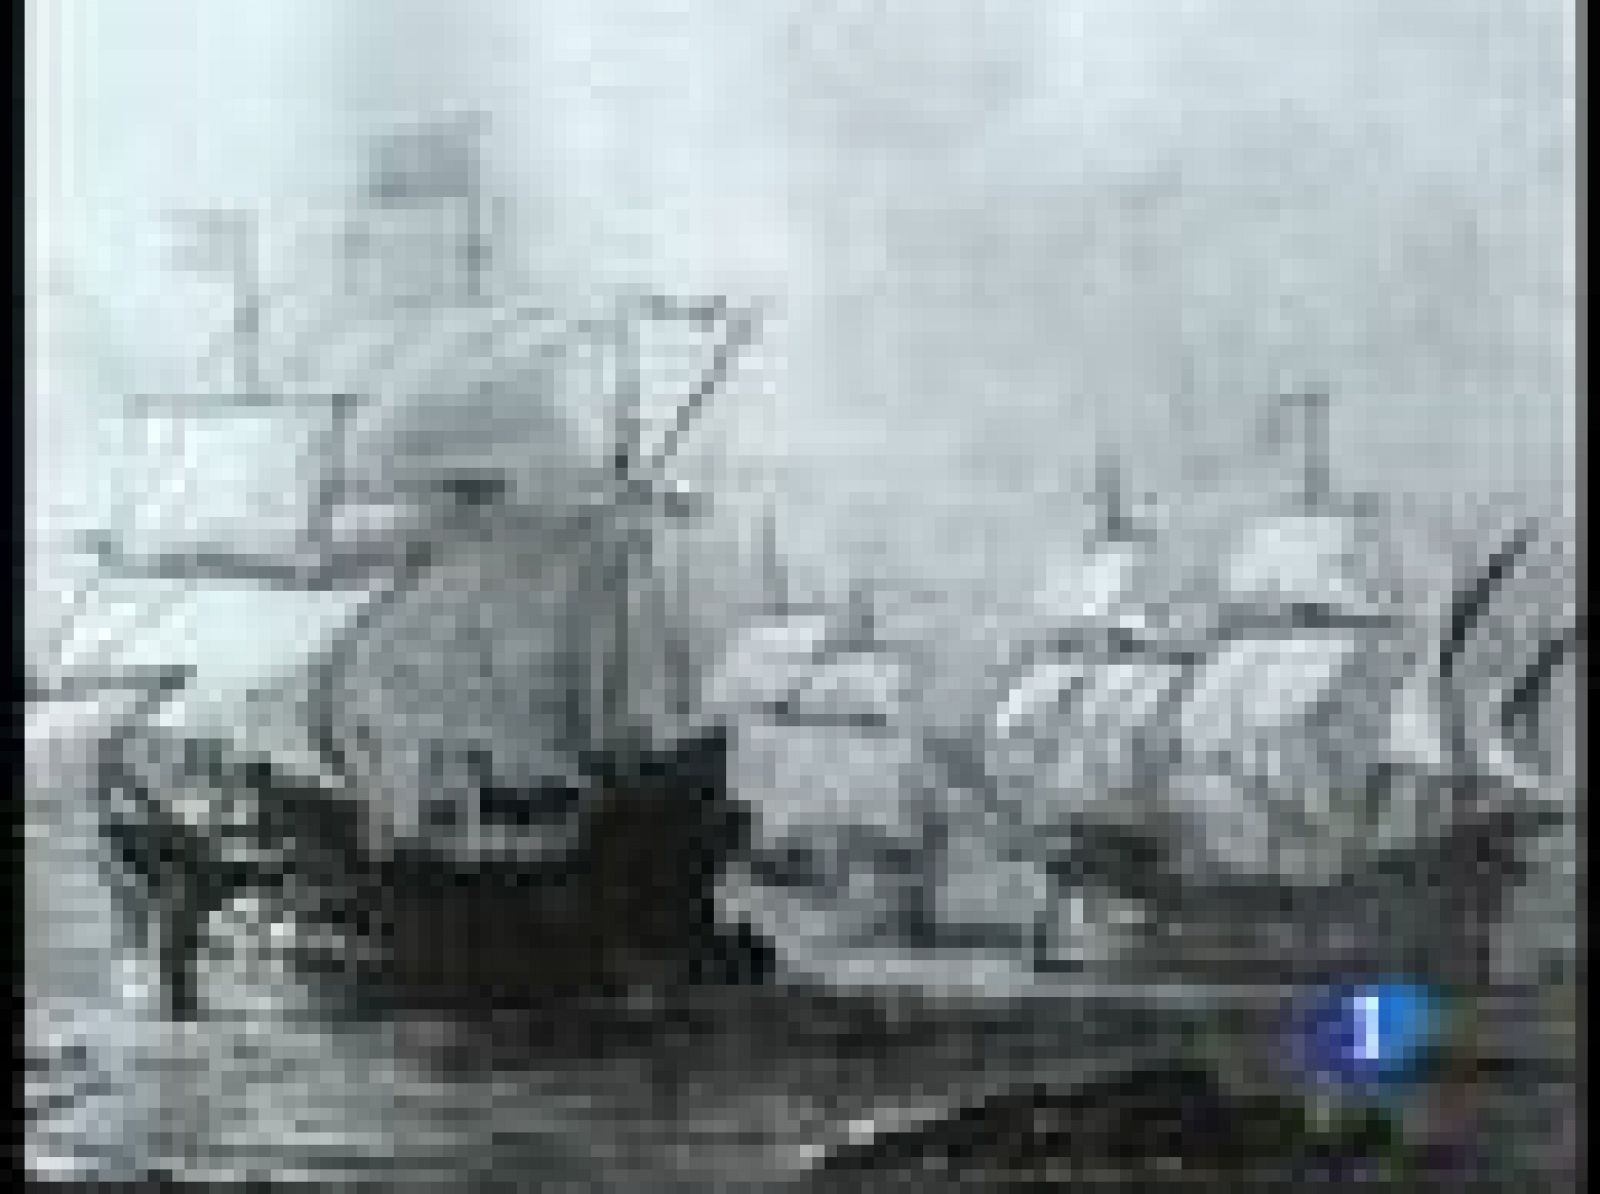 Un galeón español hundido en la costa de Vigo en 1702 y buscado durante años. Los datos históricos apuntan a que podría ser el mayor tesoro que guarda el mar. El barco puede contener cerca de mil toneladas de oro y plata, y objetos de valor incalculable.
